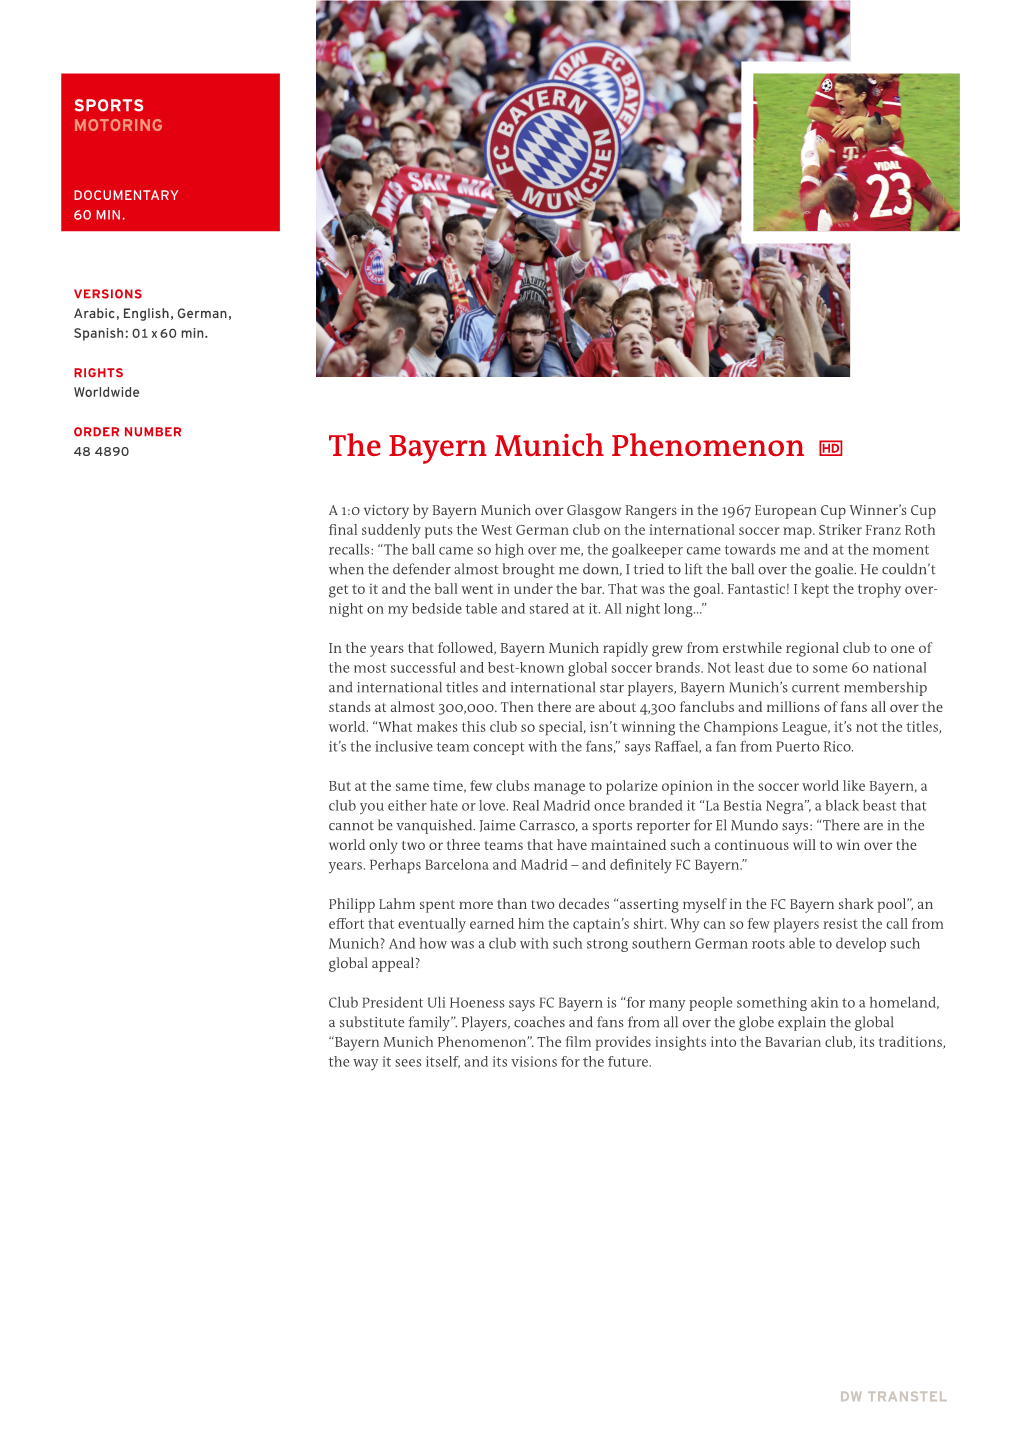 The Bayern Munich Phenomenon